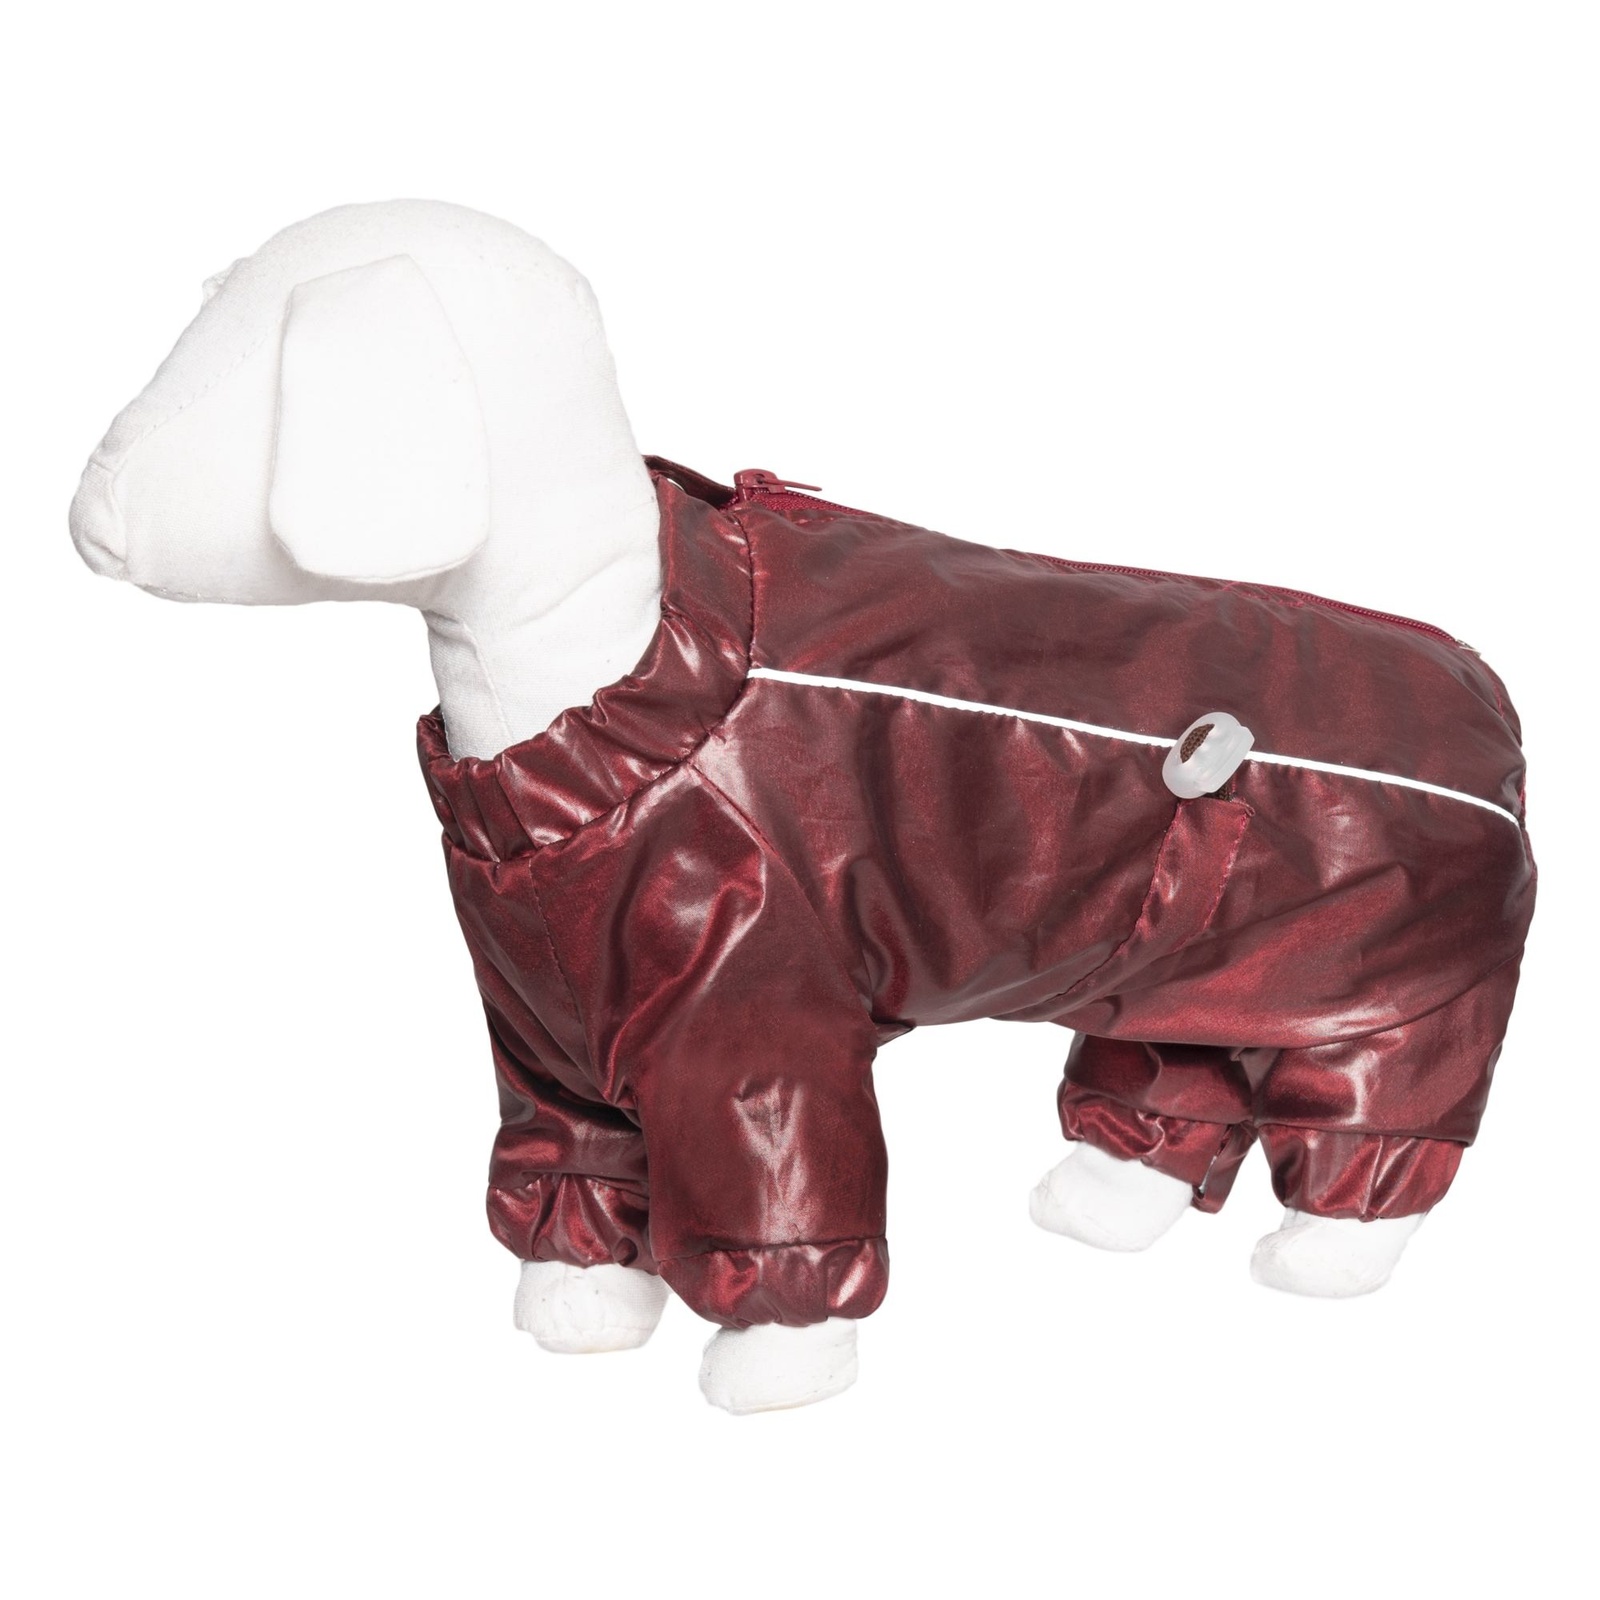 Yami-Yami одежда Yami-Yami одежда комбинезон для собак малых пород, каштановый на флисе (100 г) yami yami одежда yami yami одежда комбинезон для собак малых пород на флисе с рисунком краски xl